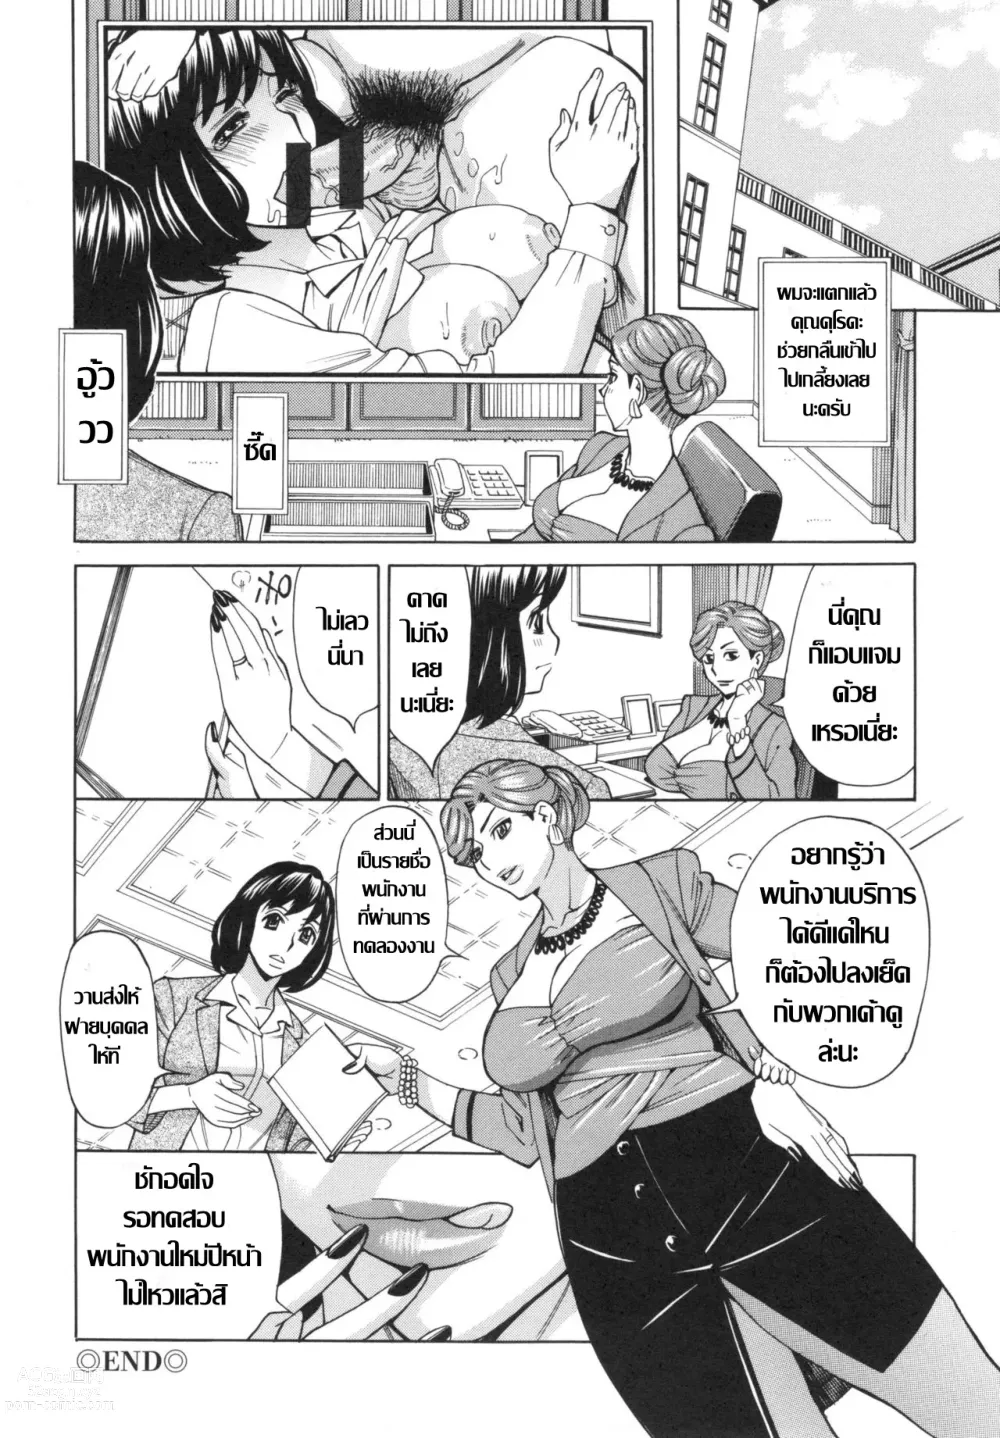 Page 19 of manga สาวใหญ่ผู้บริหาร กับการเทสงานเด็กใหม่